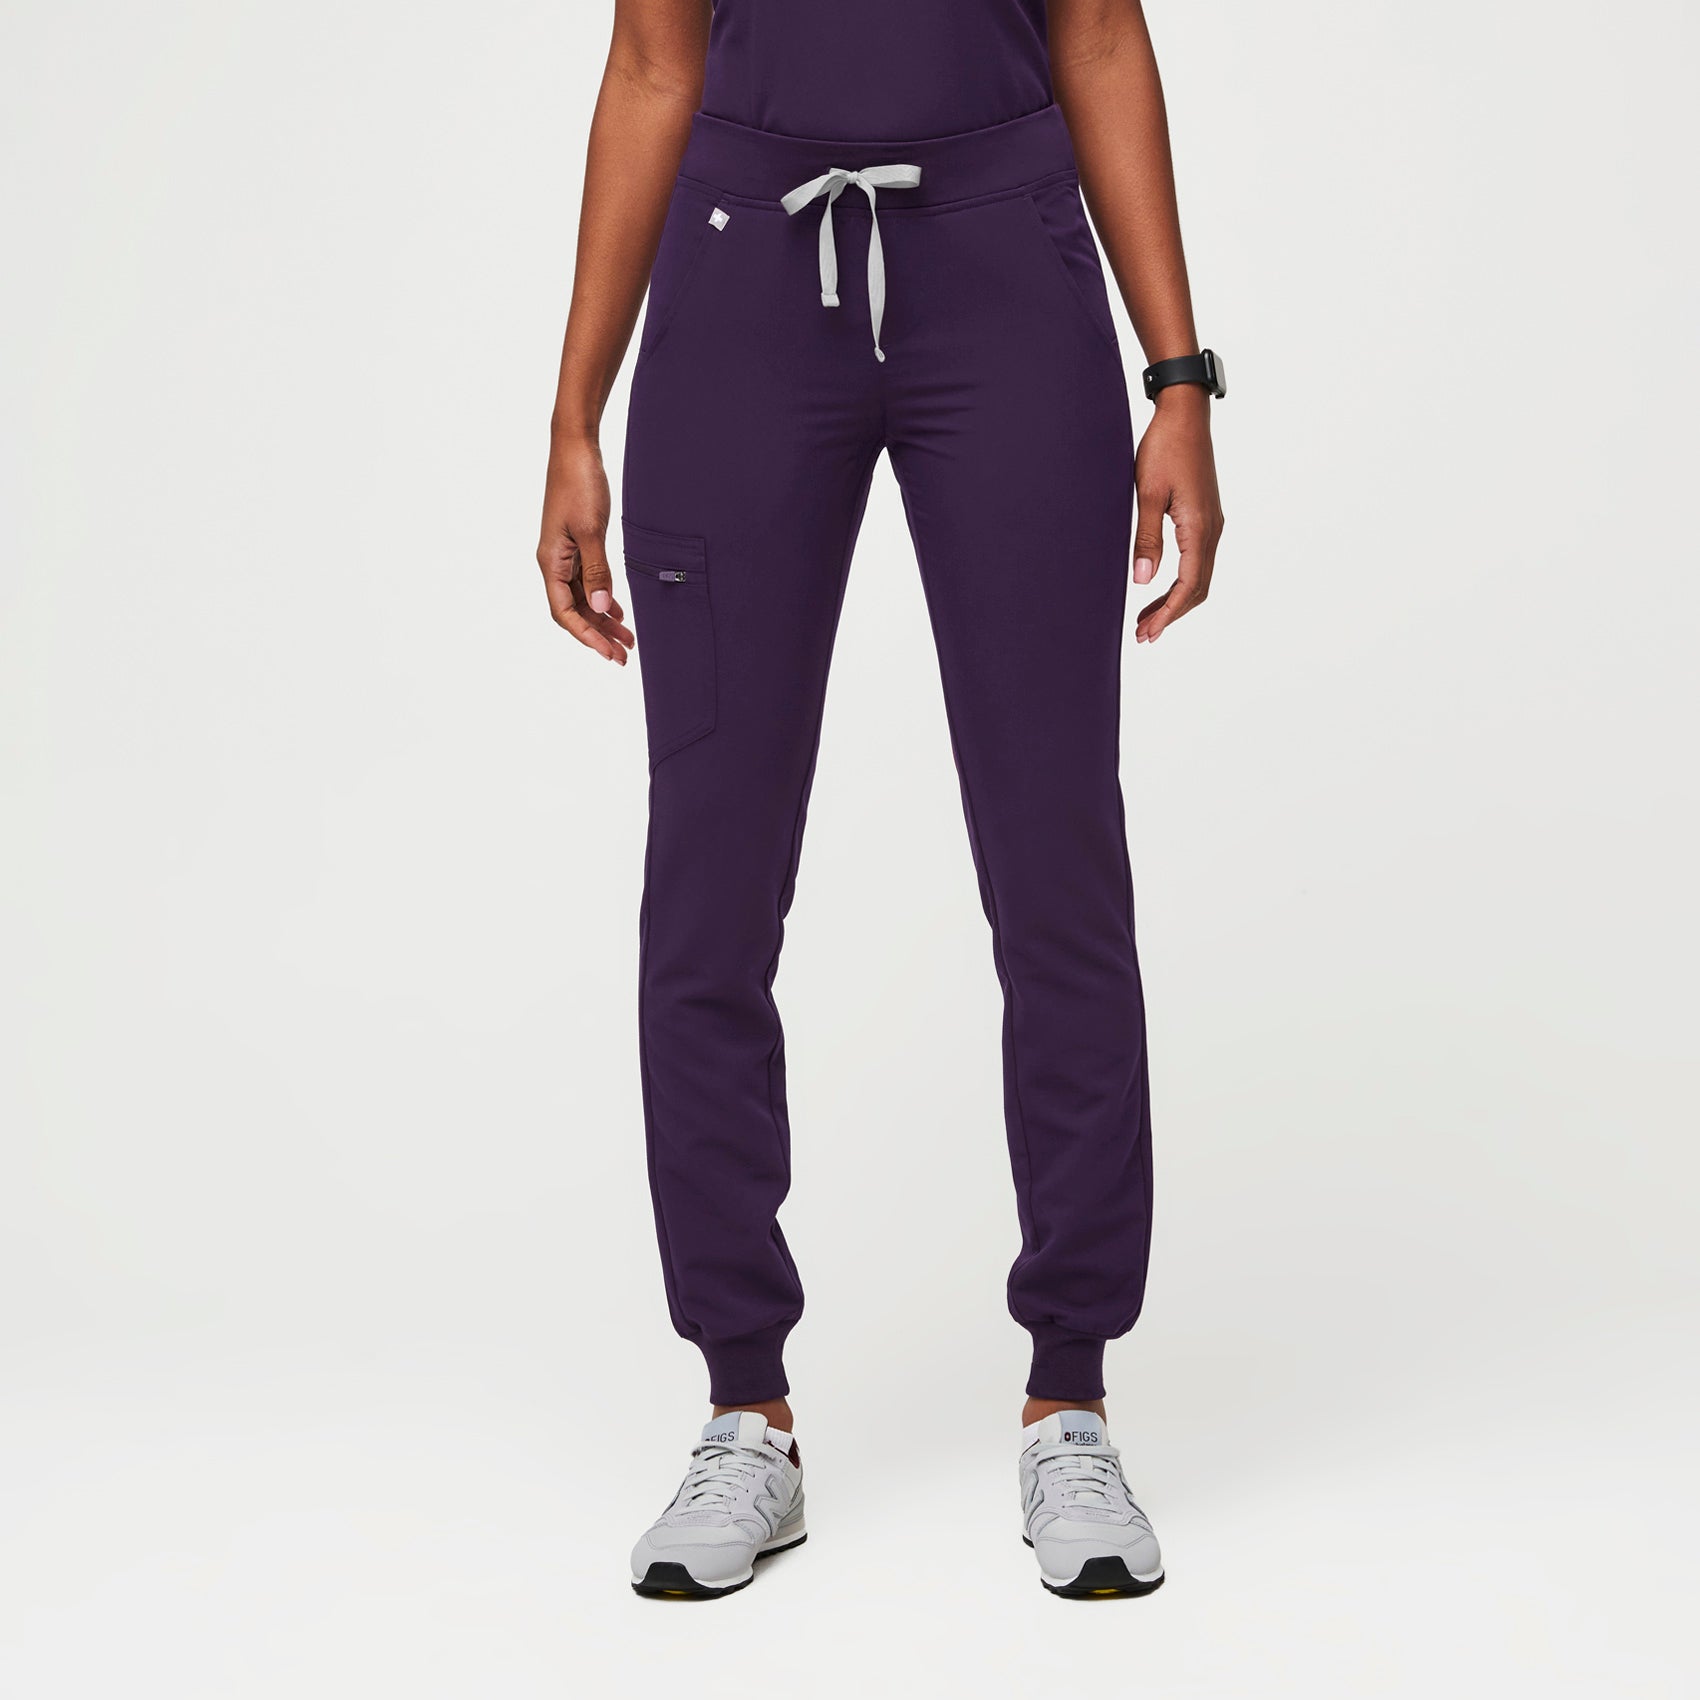 Pantalón deportivo de uniforme médico Zamora™ para mujer - Jam púrpura ·  FIGS